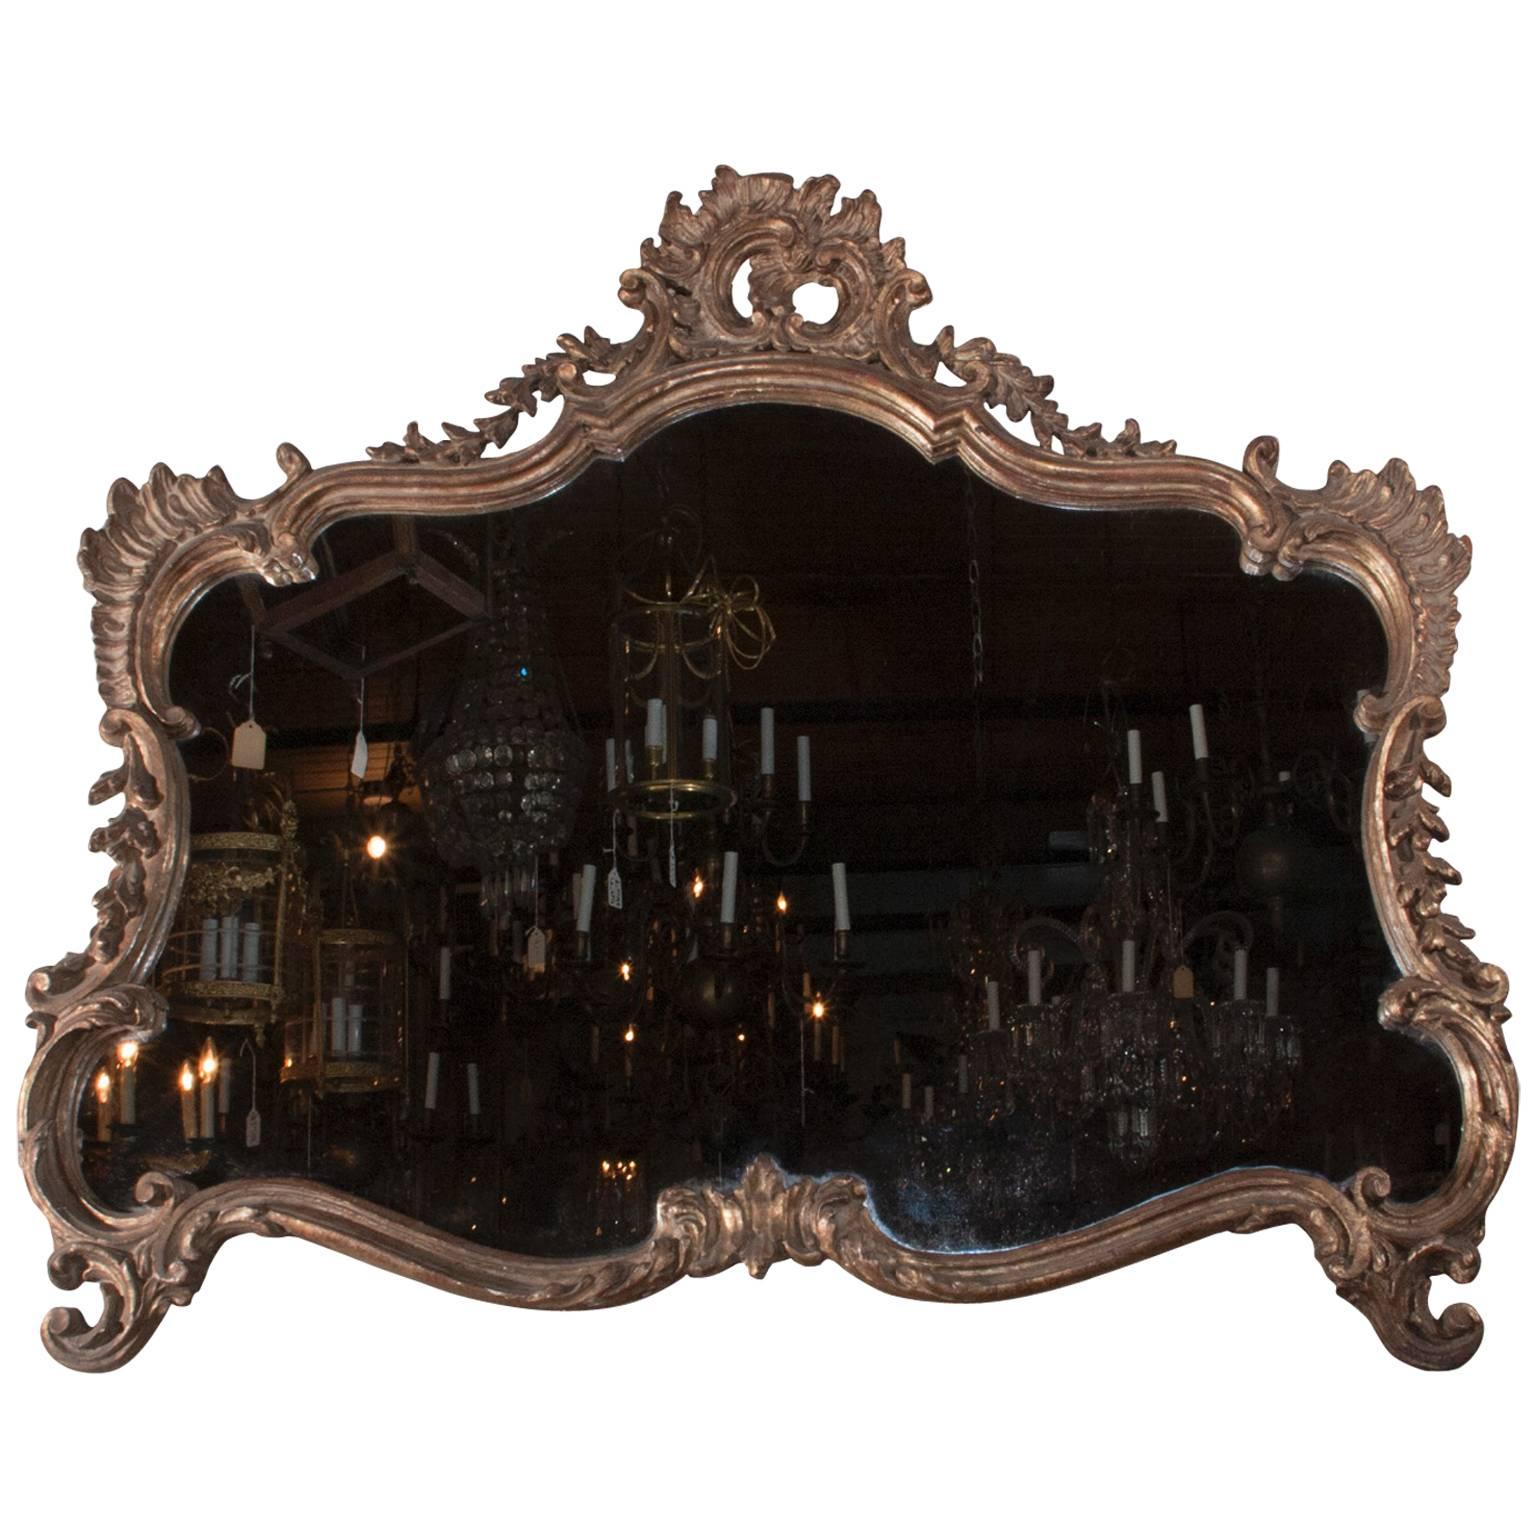 Horizontaler Spiegel aus dem 19. Jahrhundert, geschnitzt und vergoldet